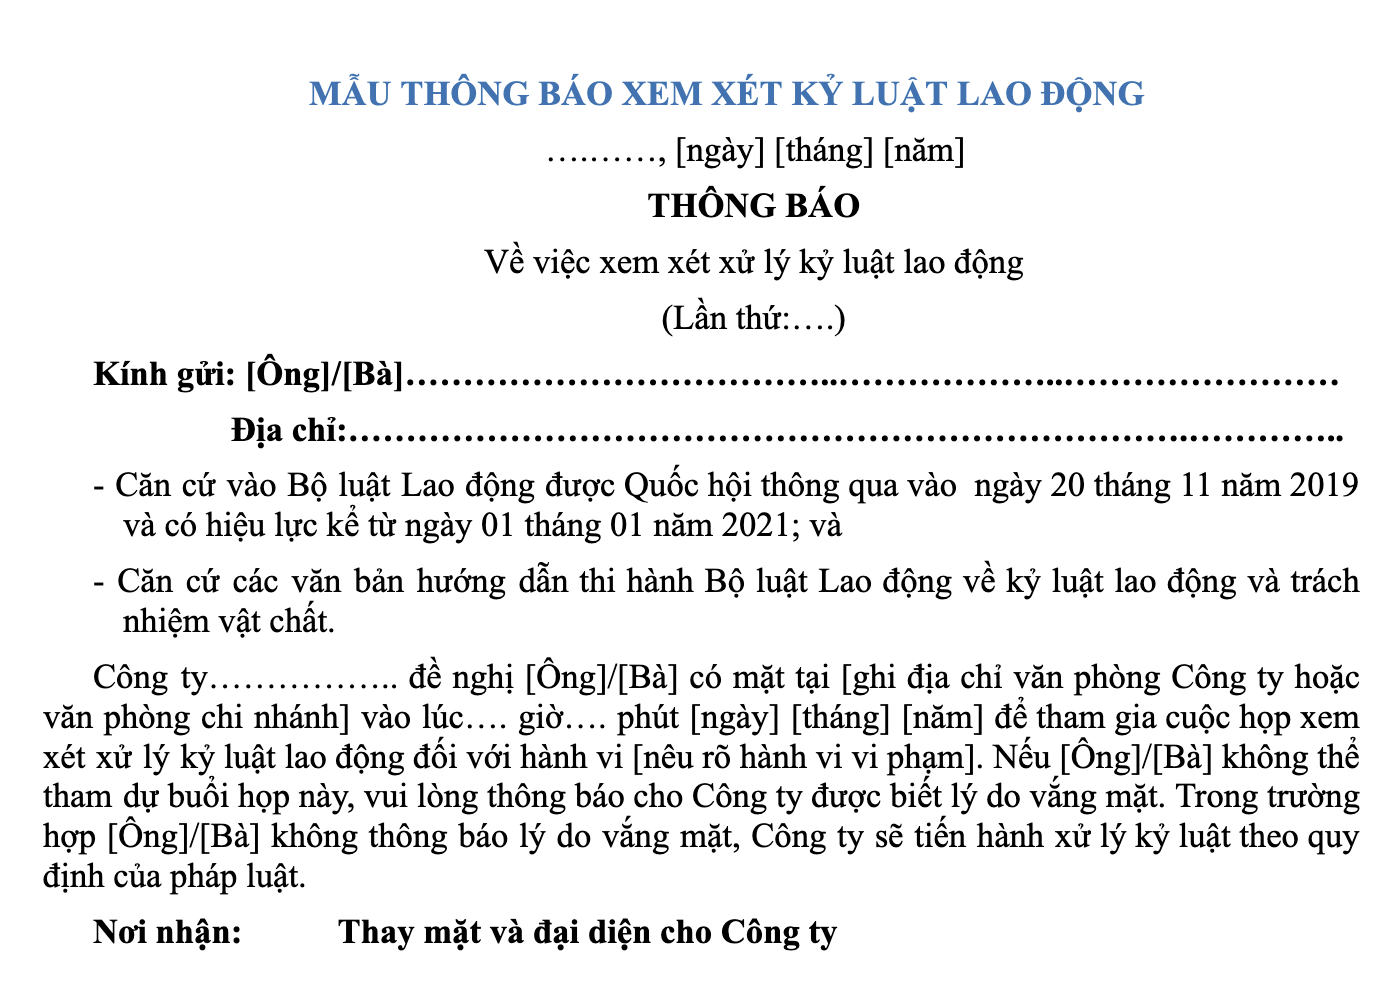 mau-thong-bao-xem-xet-ky-luat-lao-dong-2